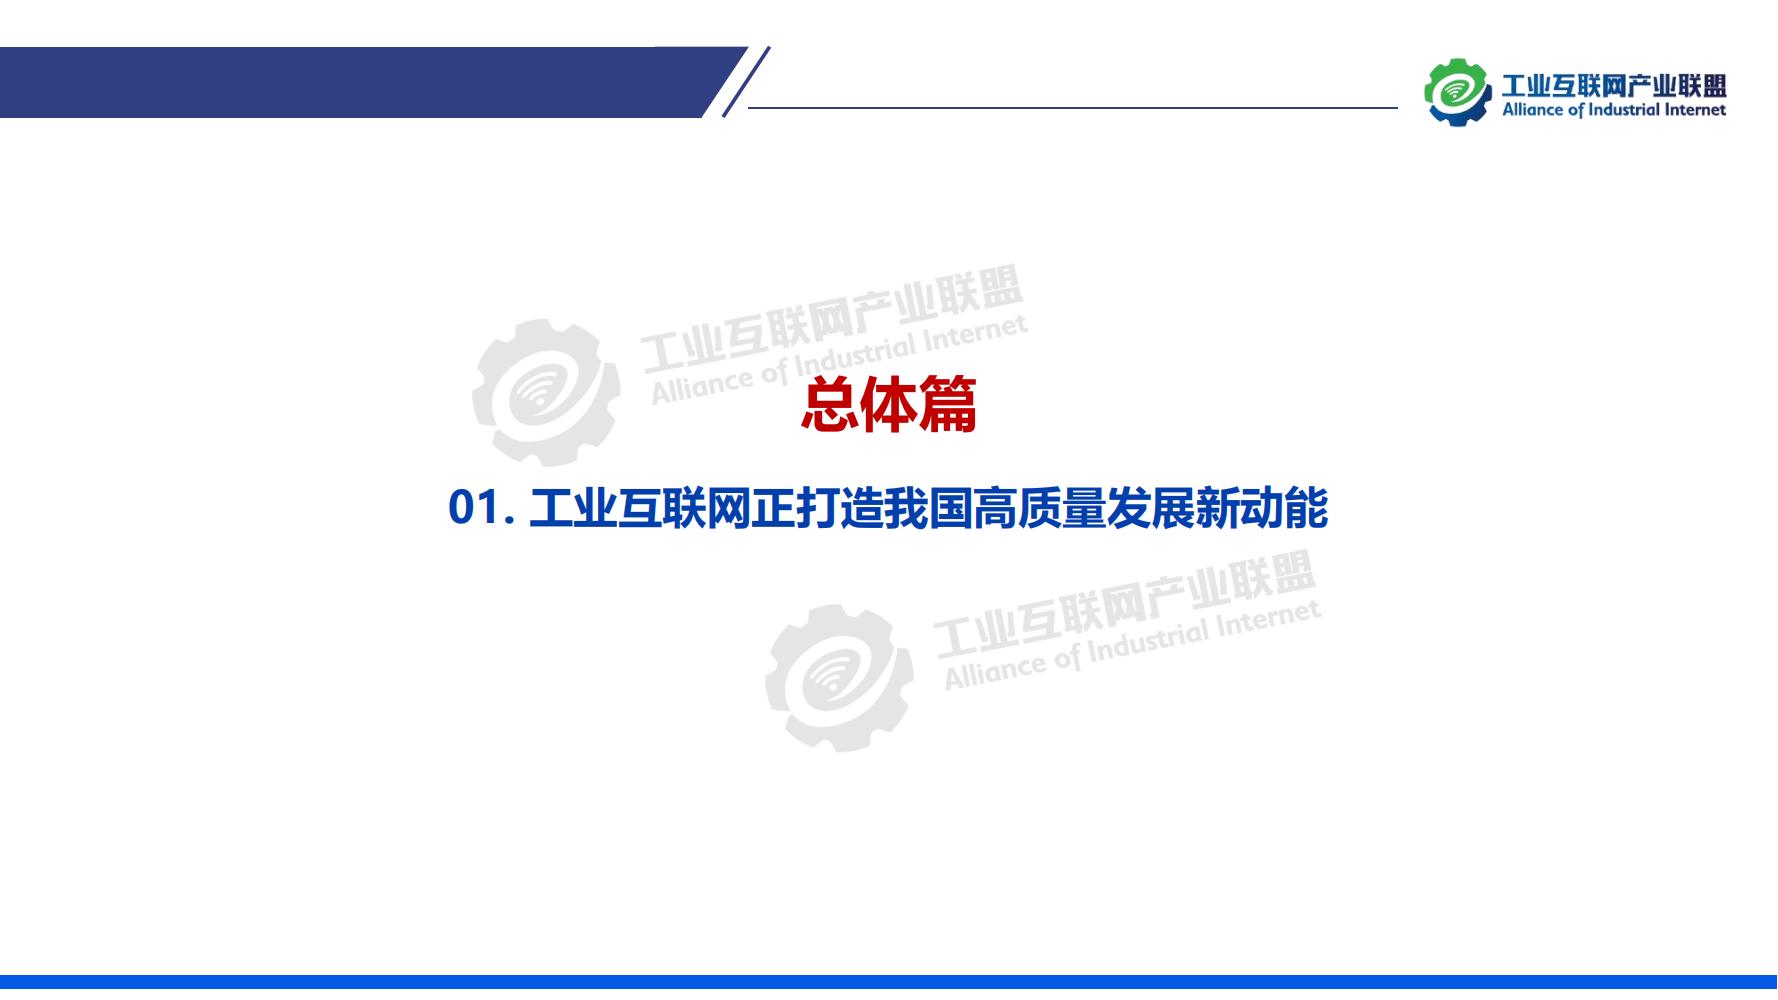 1-中国工业互联网发展成效评估报告-水印_05.jpg